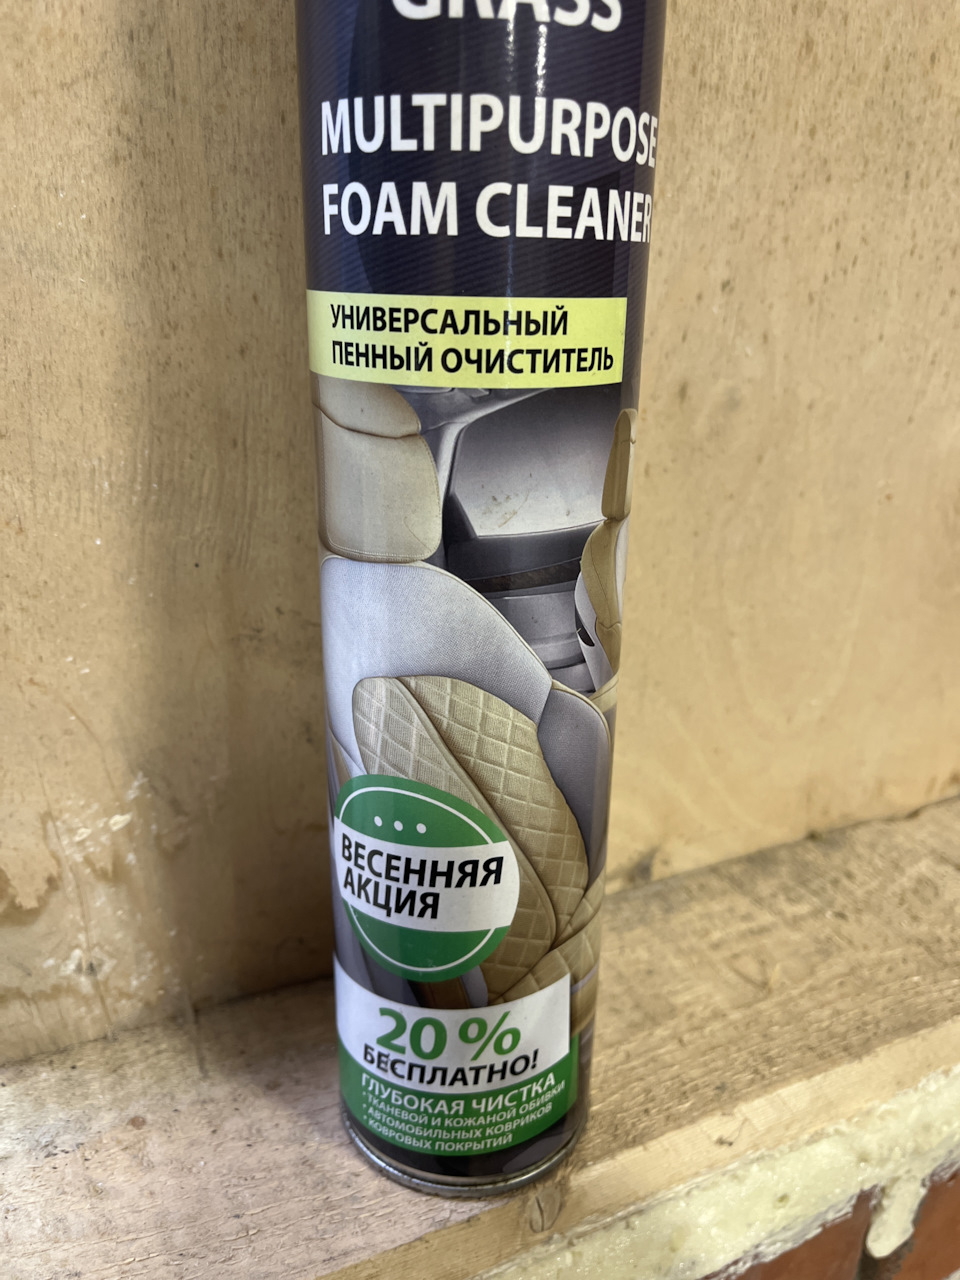 Универсальный пенный очиститель «Multipurpose Foam Cleaner», 750 мл. Пенный очиститель салона автомобиля grass. 7 Win универсальный очиститель пенный. Пенный очиститель пластика grass.